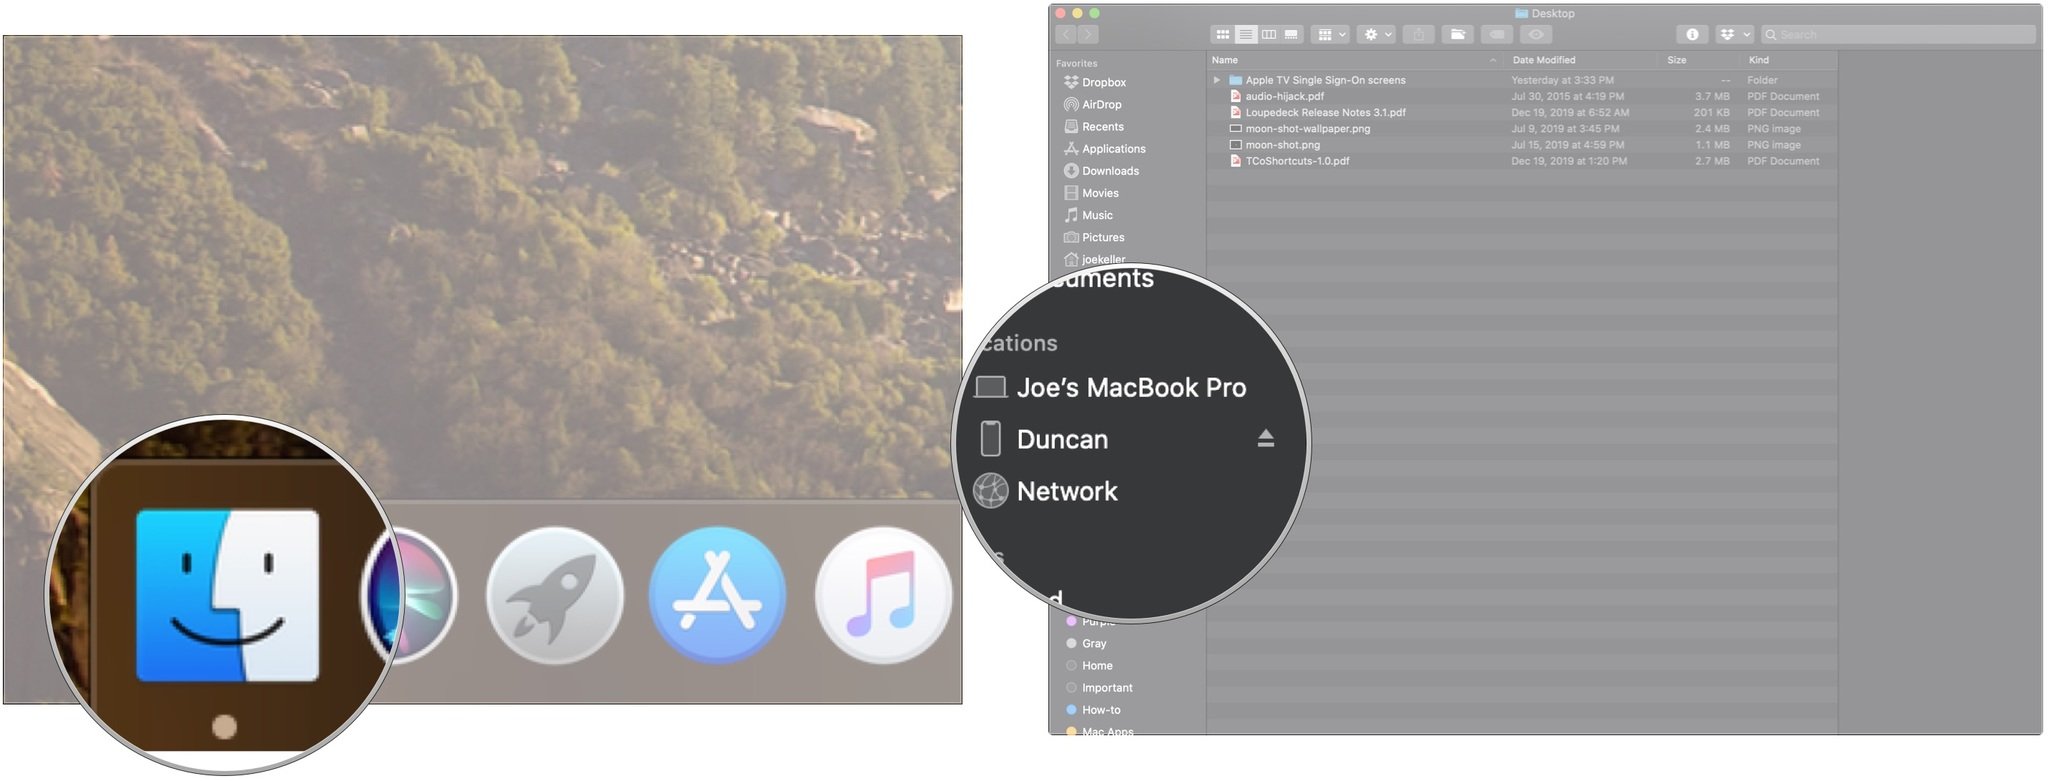 Создайте резервную копию своего iPhone на macOS Catalina, показывая, как нажать Finder, а затем - устройство.